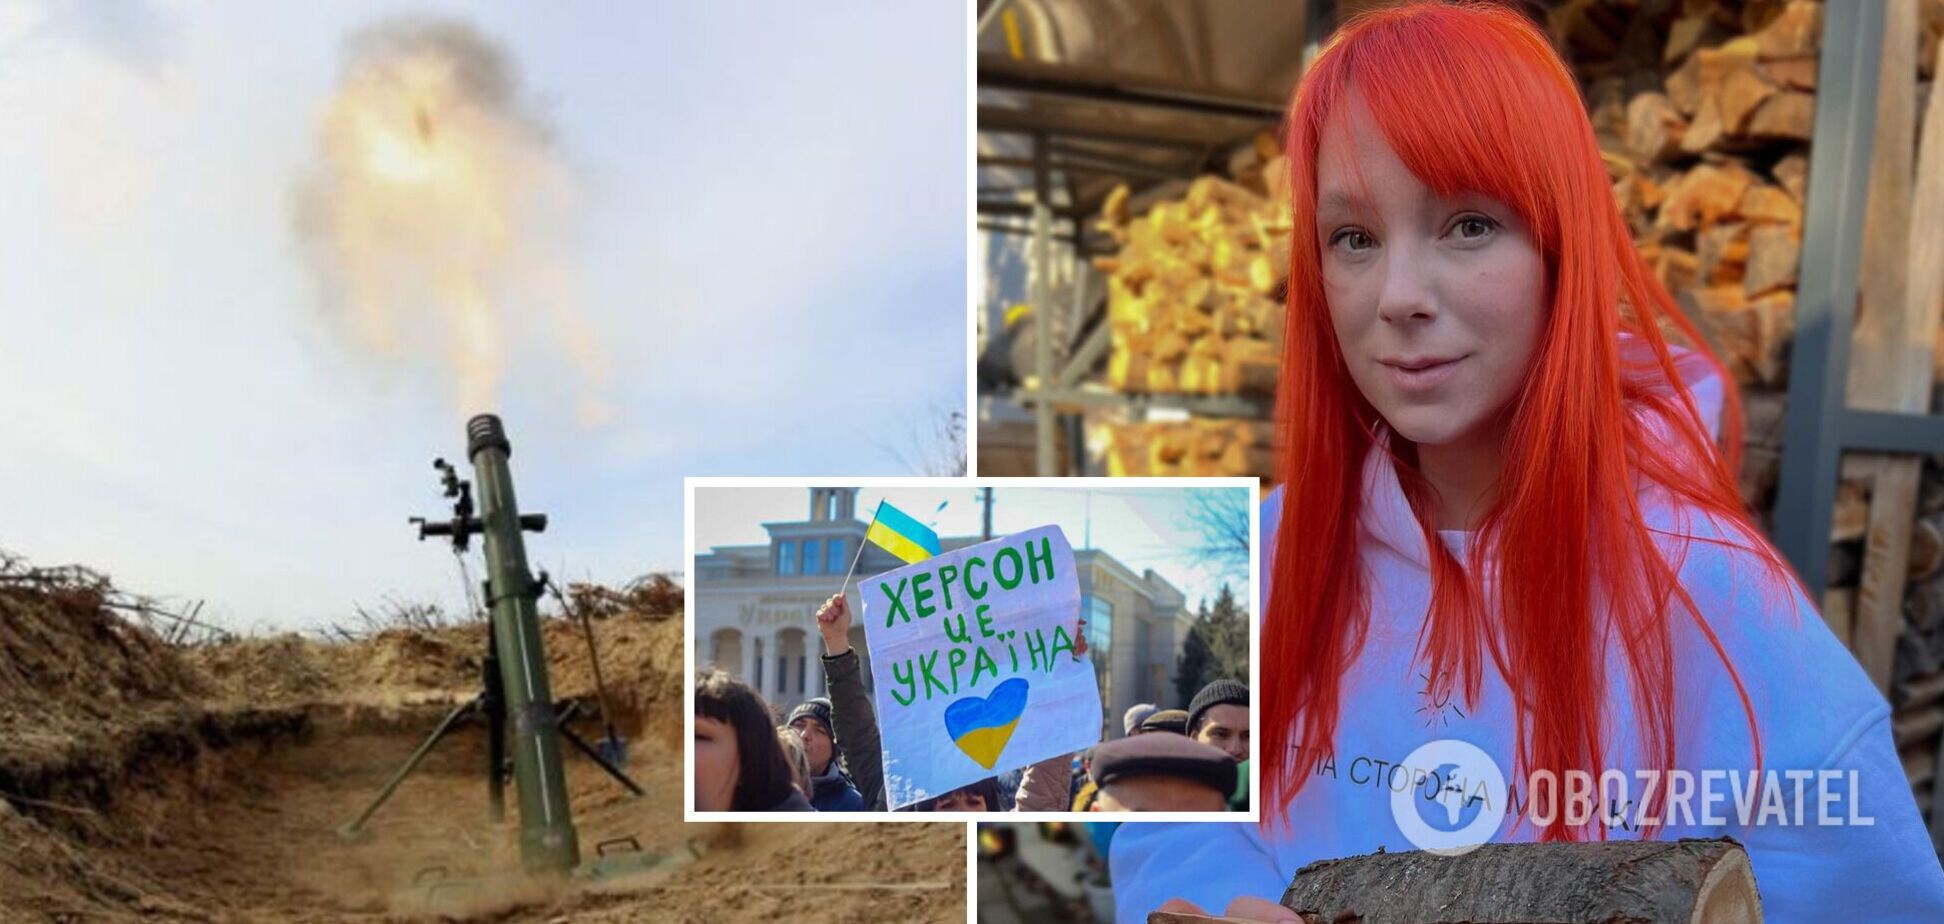 Тарабарова рассказала, что оккупанты уничтожили ее школу в Херсоне. Фото